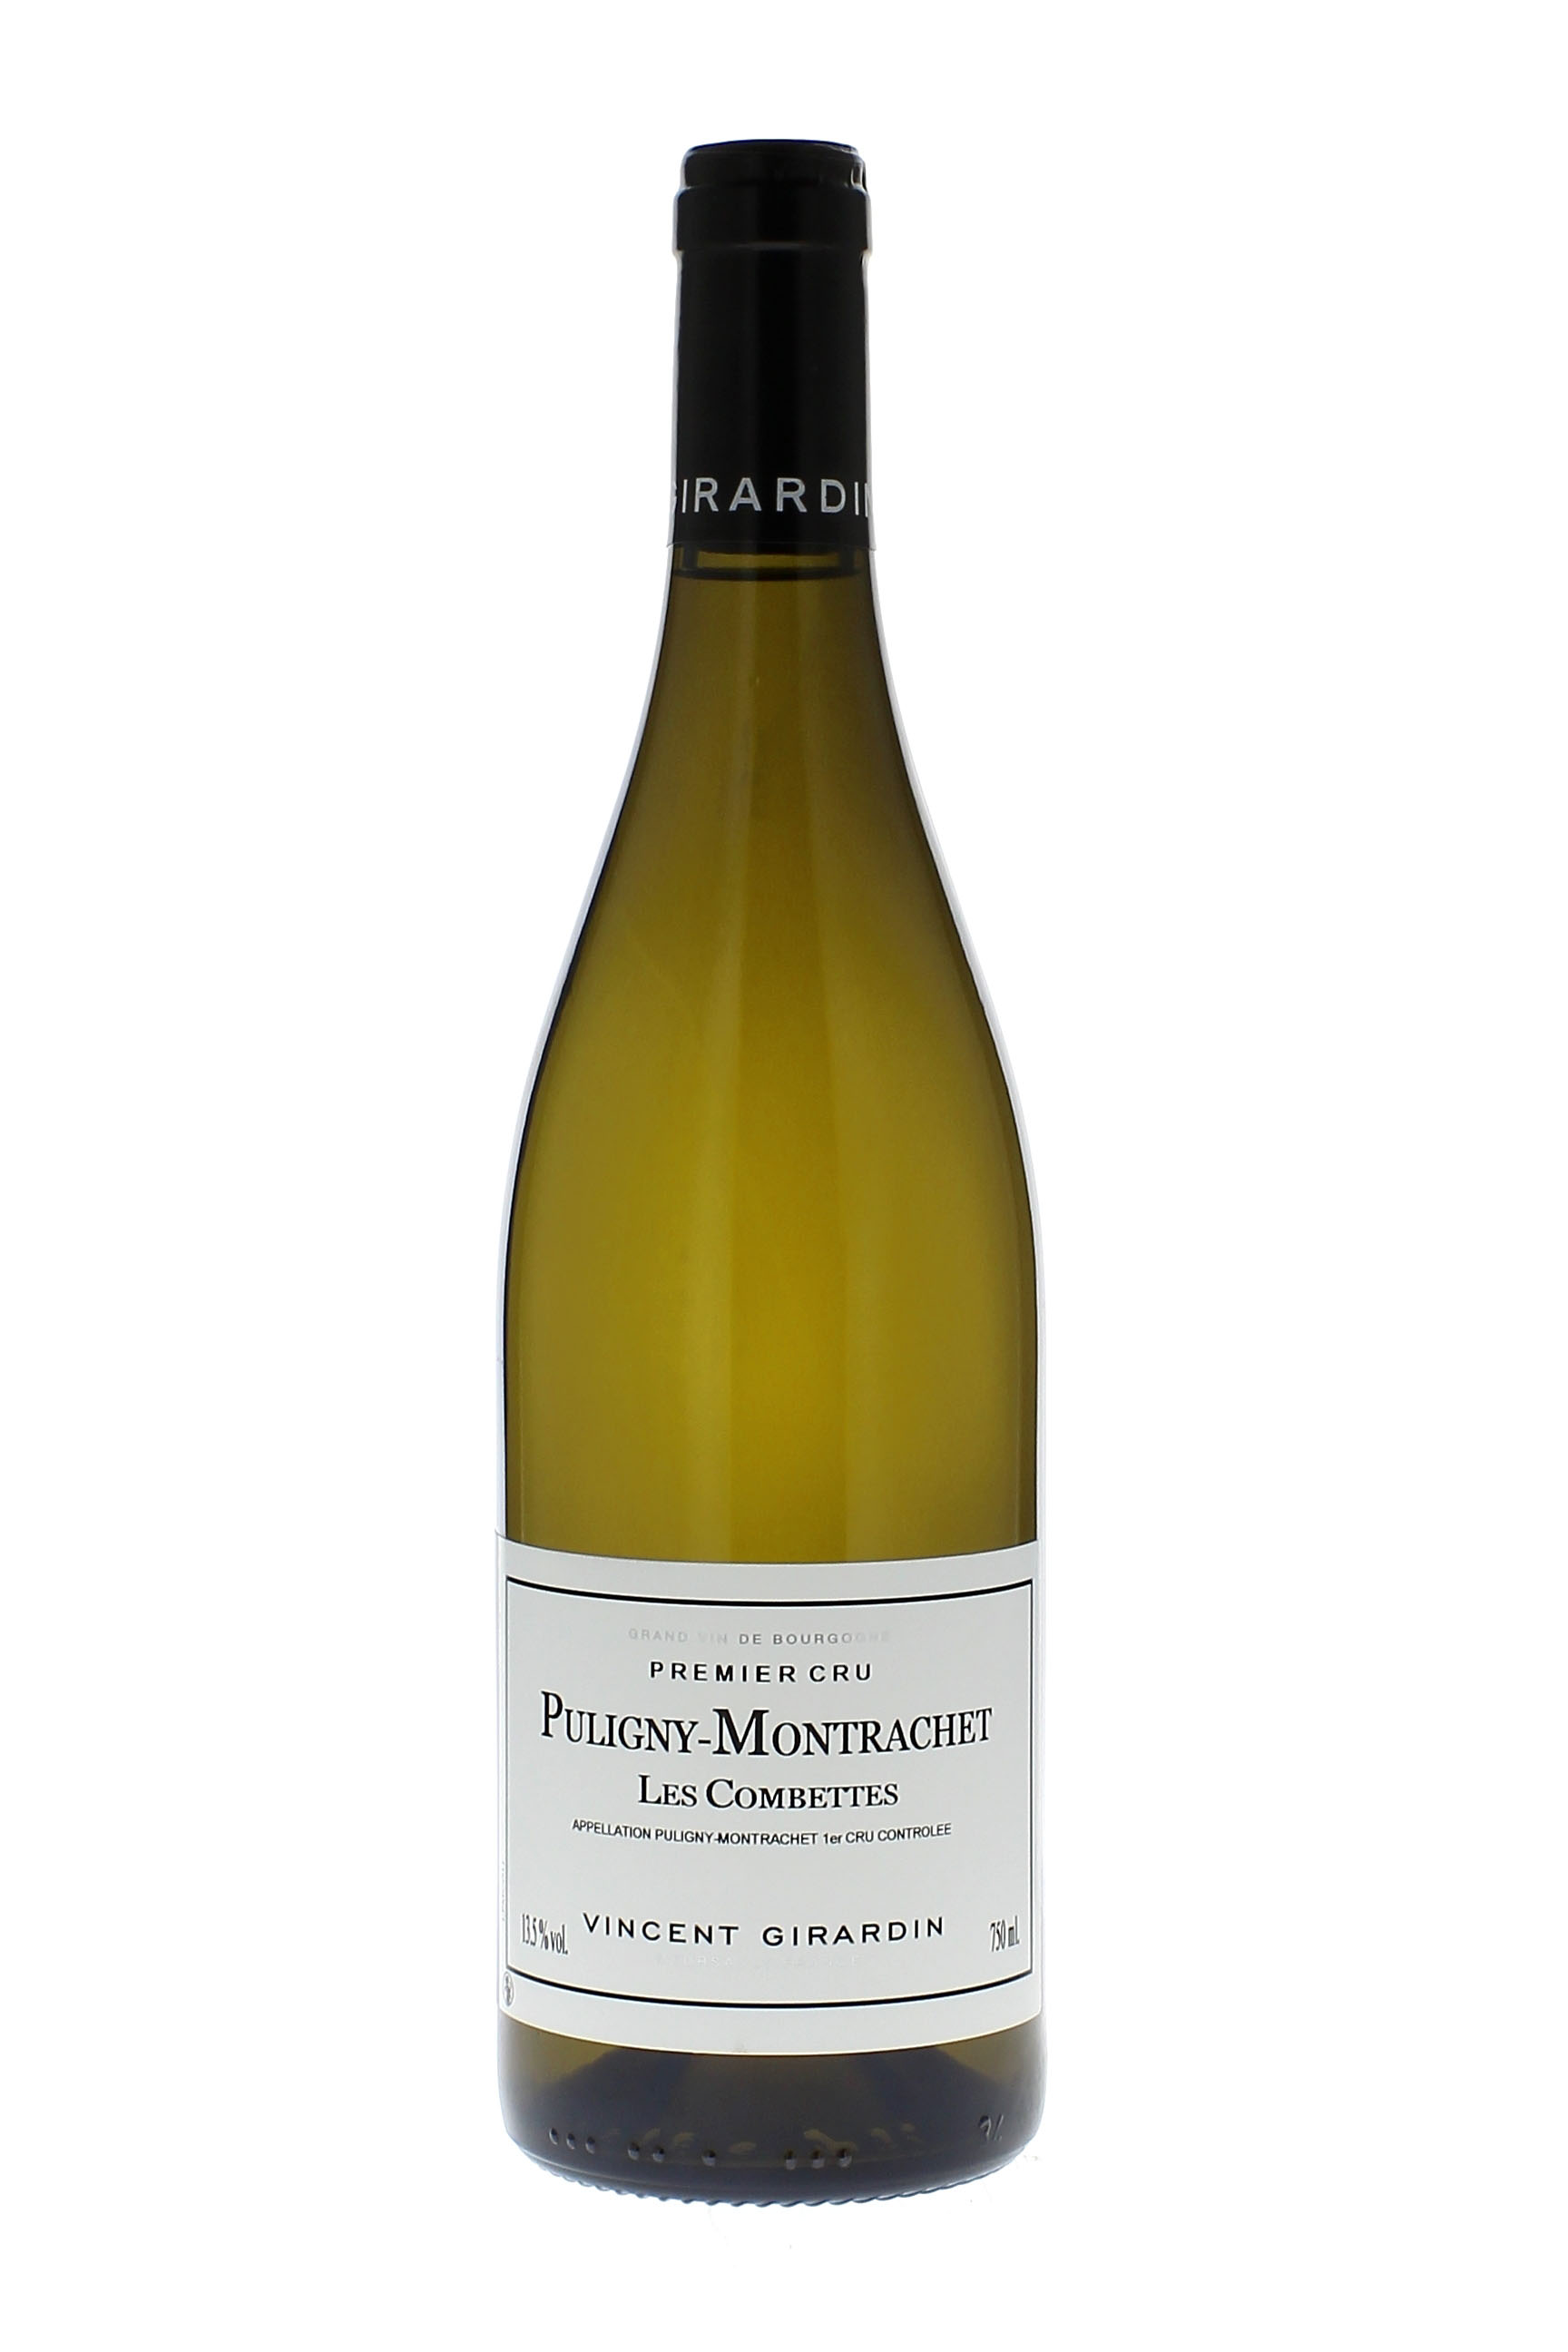 Puligny montrachet 1er cru les combettes 2015 Domaine GIRARDIN Vincent, Bourgogne blanc